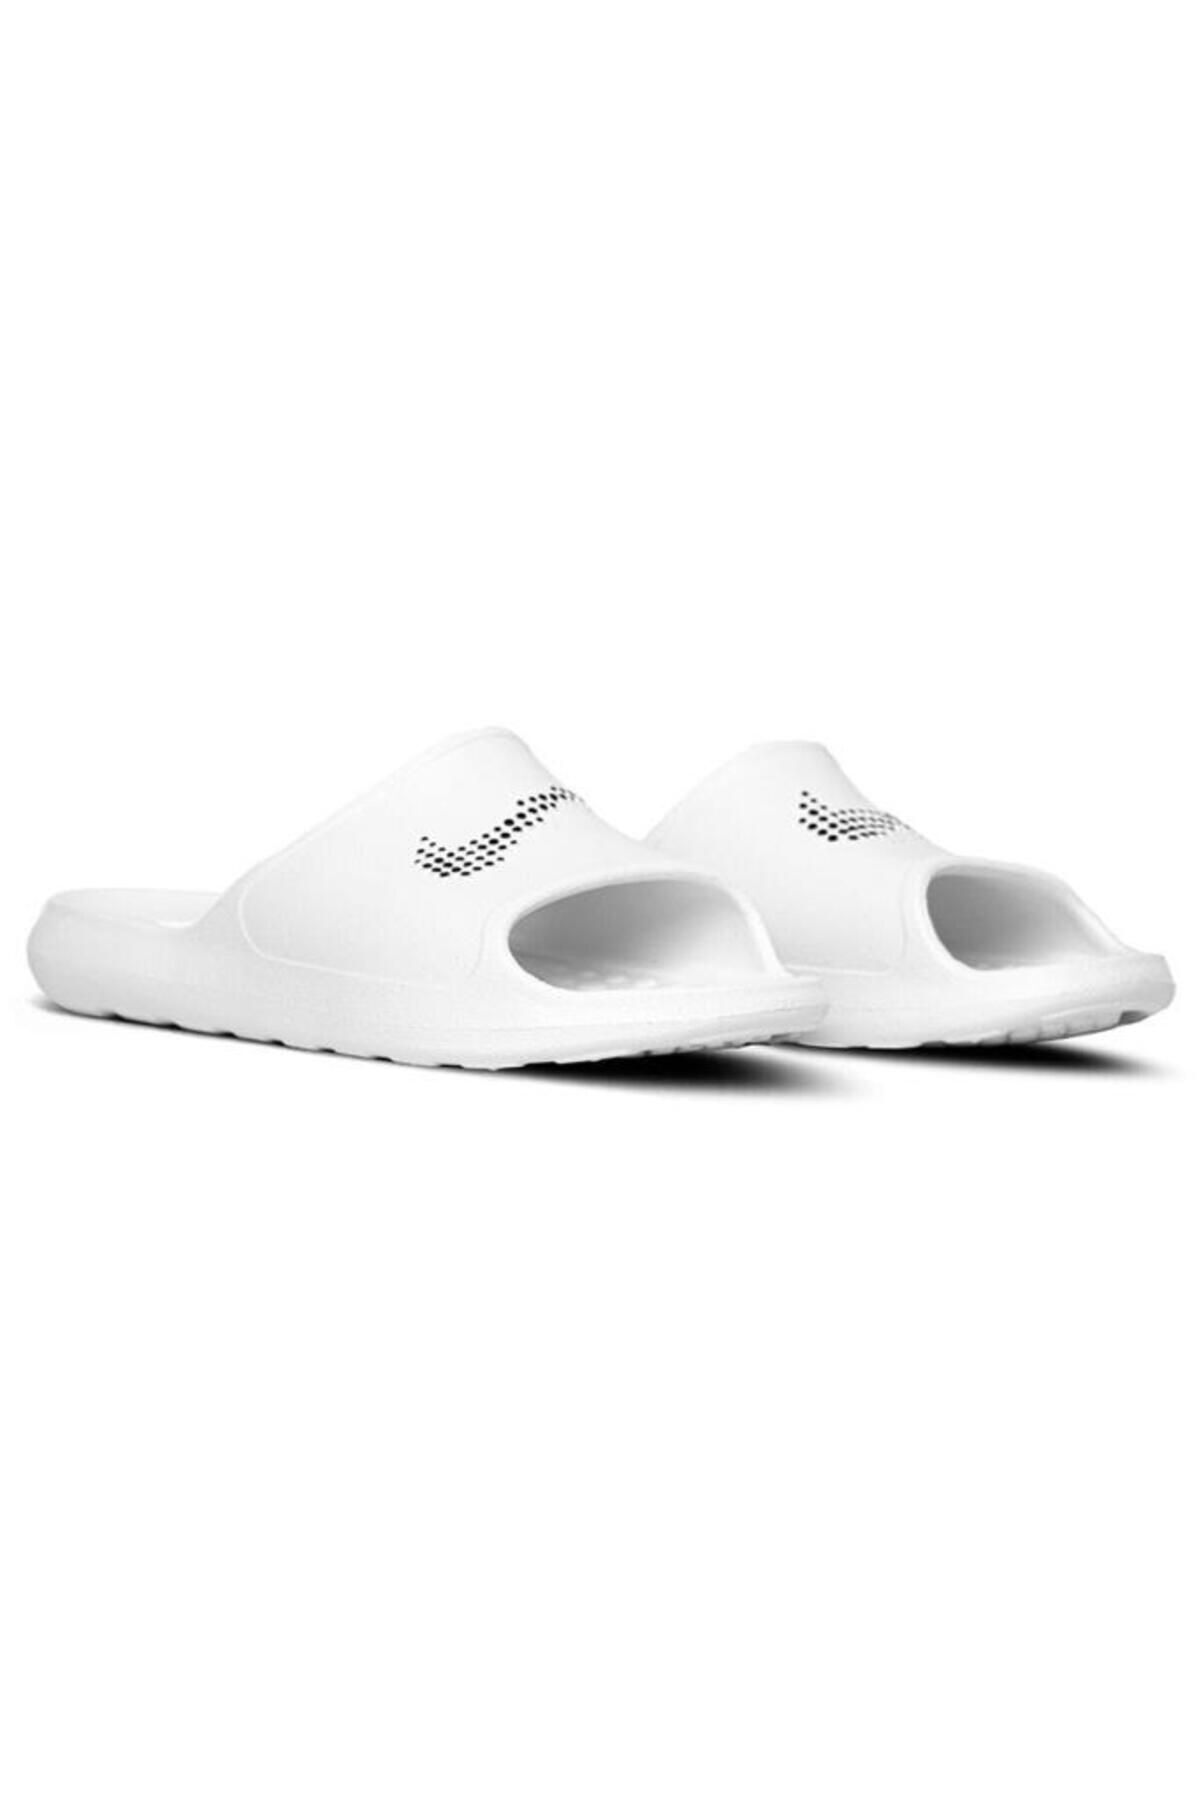 Nike Victori One Erkek Terlik Ayakkabı Cz5478-100-beyaz